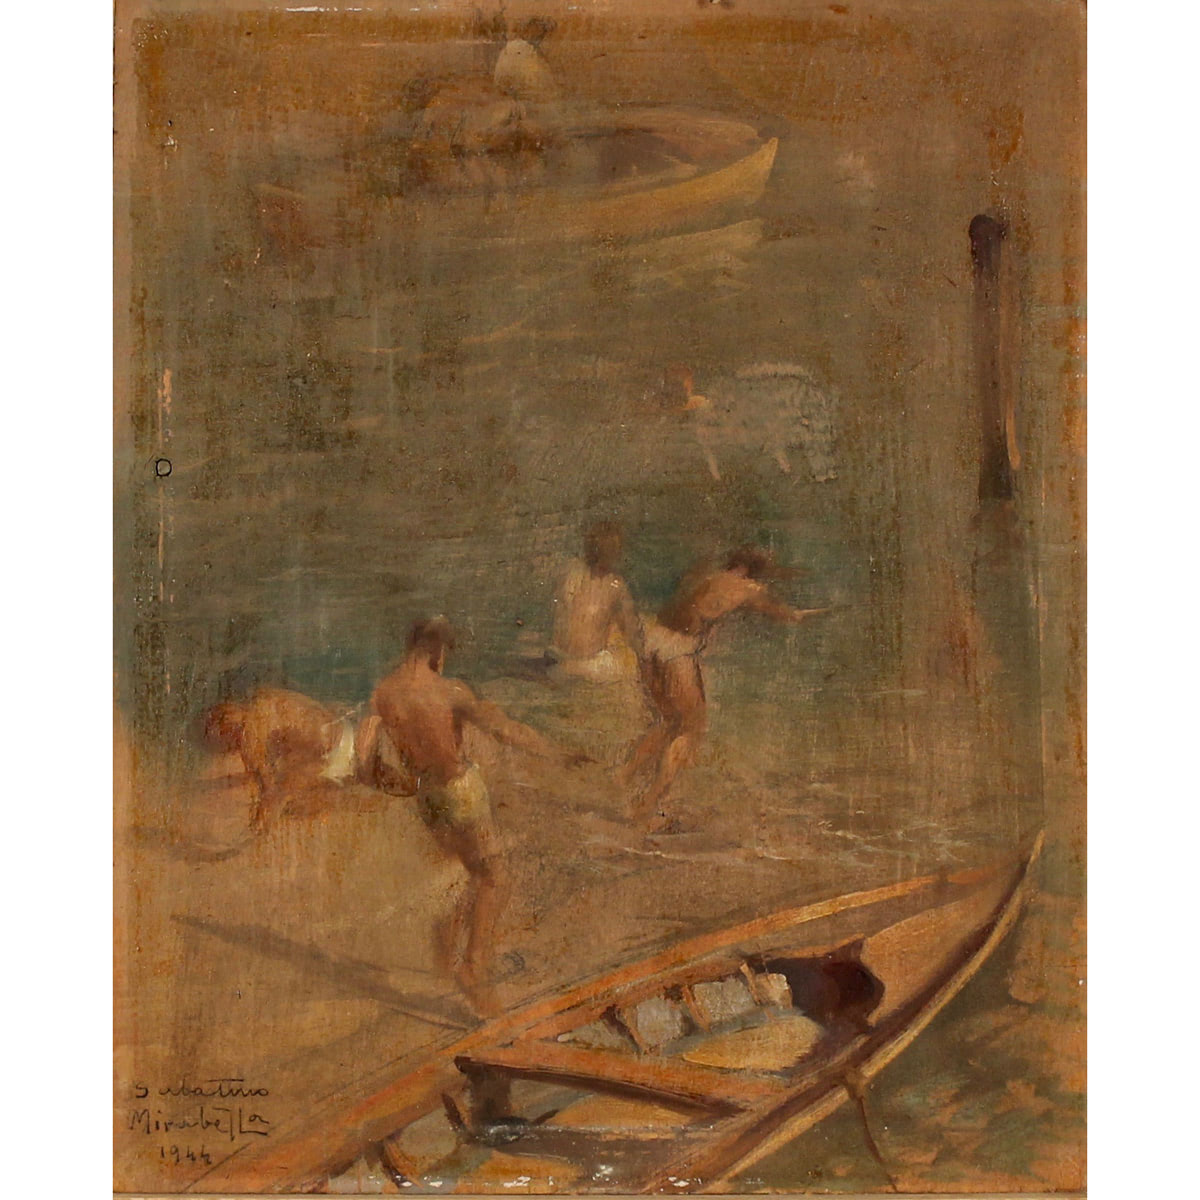 SABATINO MIRABELLA (1902/1973) "Pescatori sulla riva del canale" - "Fishermen on the shore of the canal"